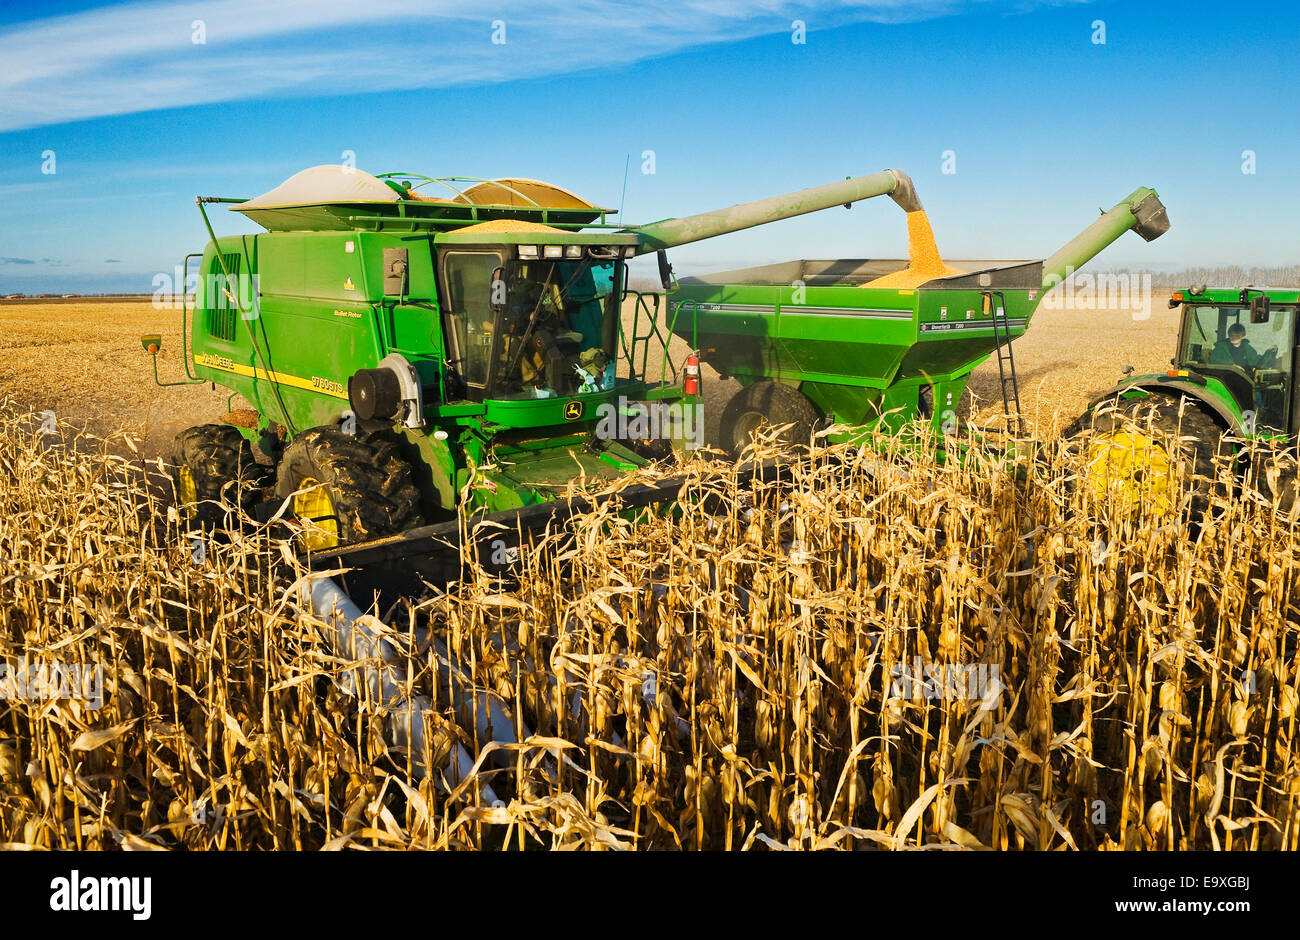 Landwirtschaft - ein John Deere kombinieren ernten Getreide Mais und entlädt in einem Traktor gezogen Getreide Wagen Stockfoto